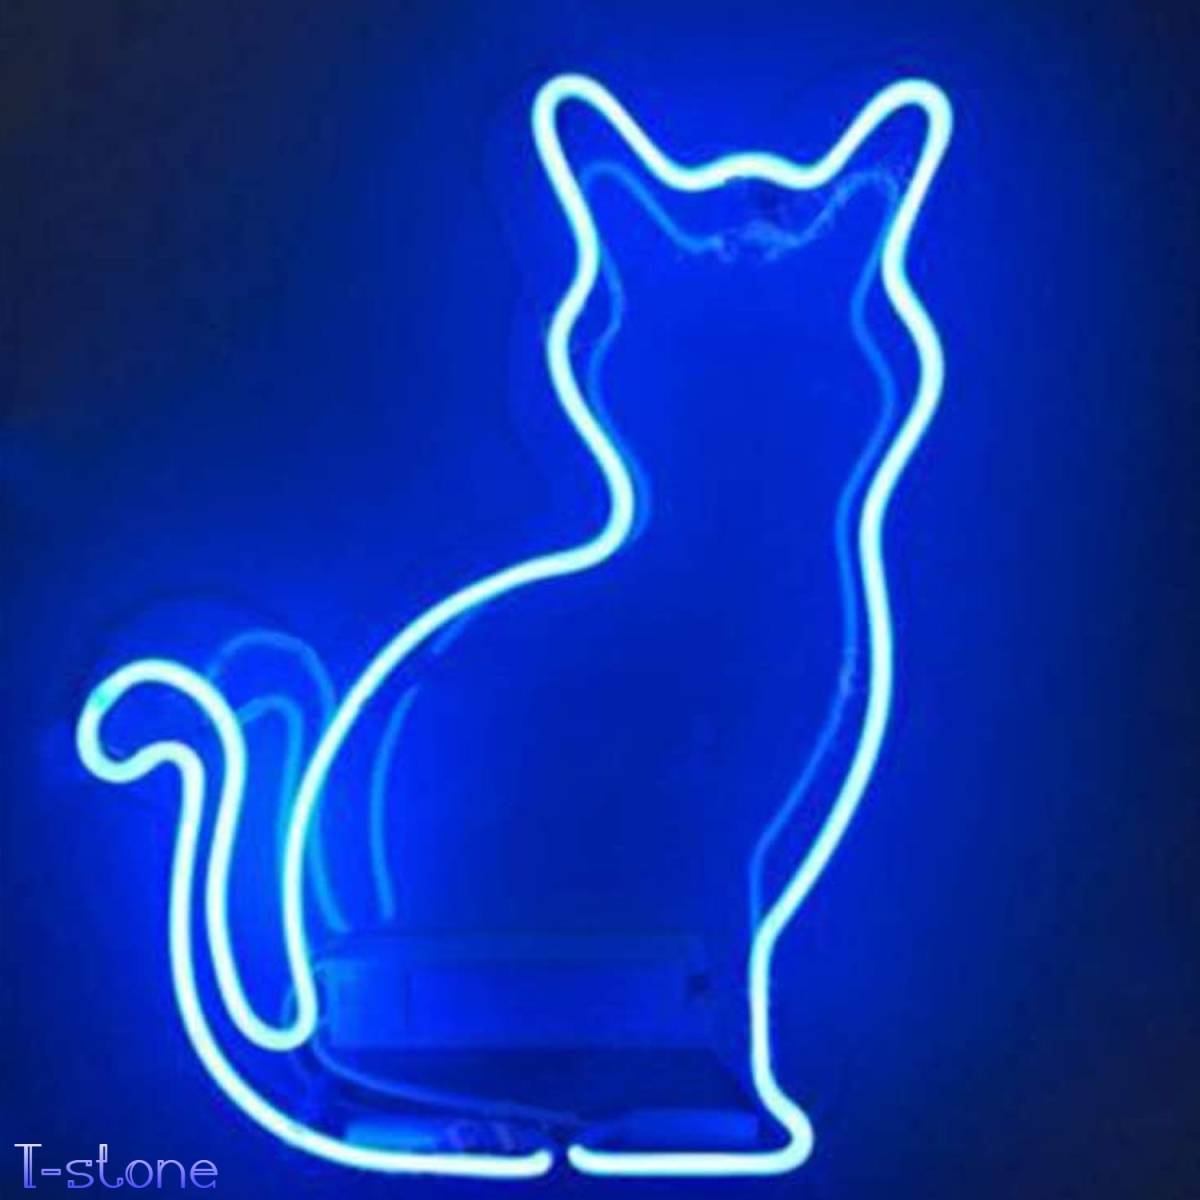 ネオンサイン ネコ好きにはたまらない 猫ガラスネオン看板 ブルー 青 ルームデコレーション 装飾 室内インテリア ナイトライト 雰囲気作り